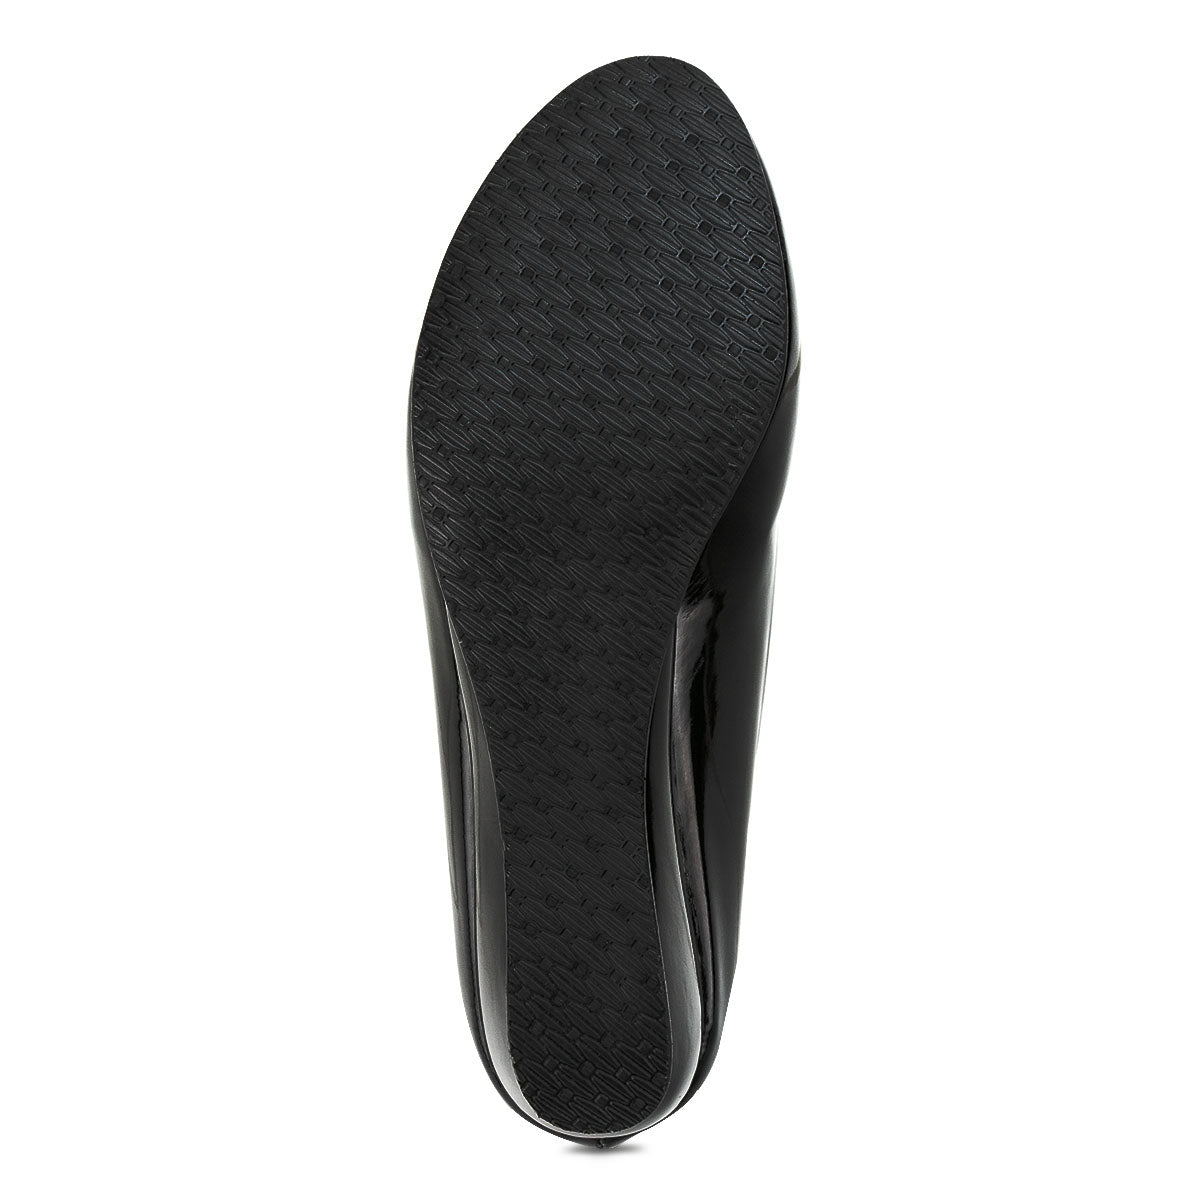 Zapato Casual Tacon Puente Charol Dama Penny Lane 588-590-591-592